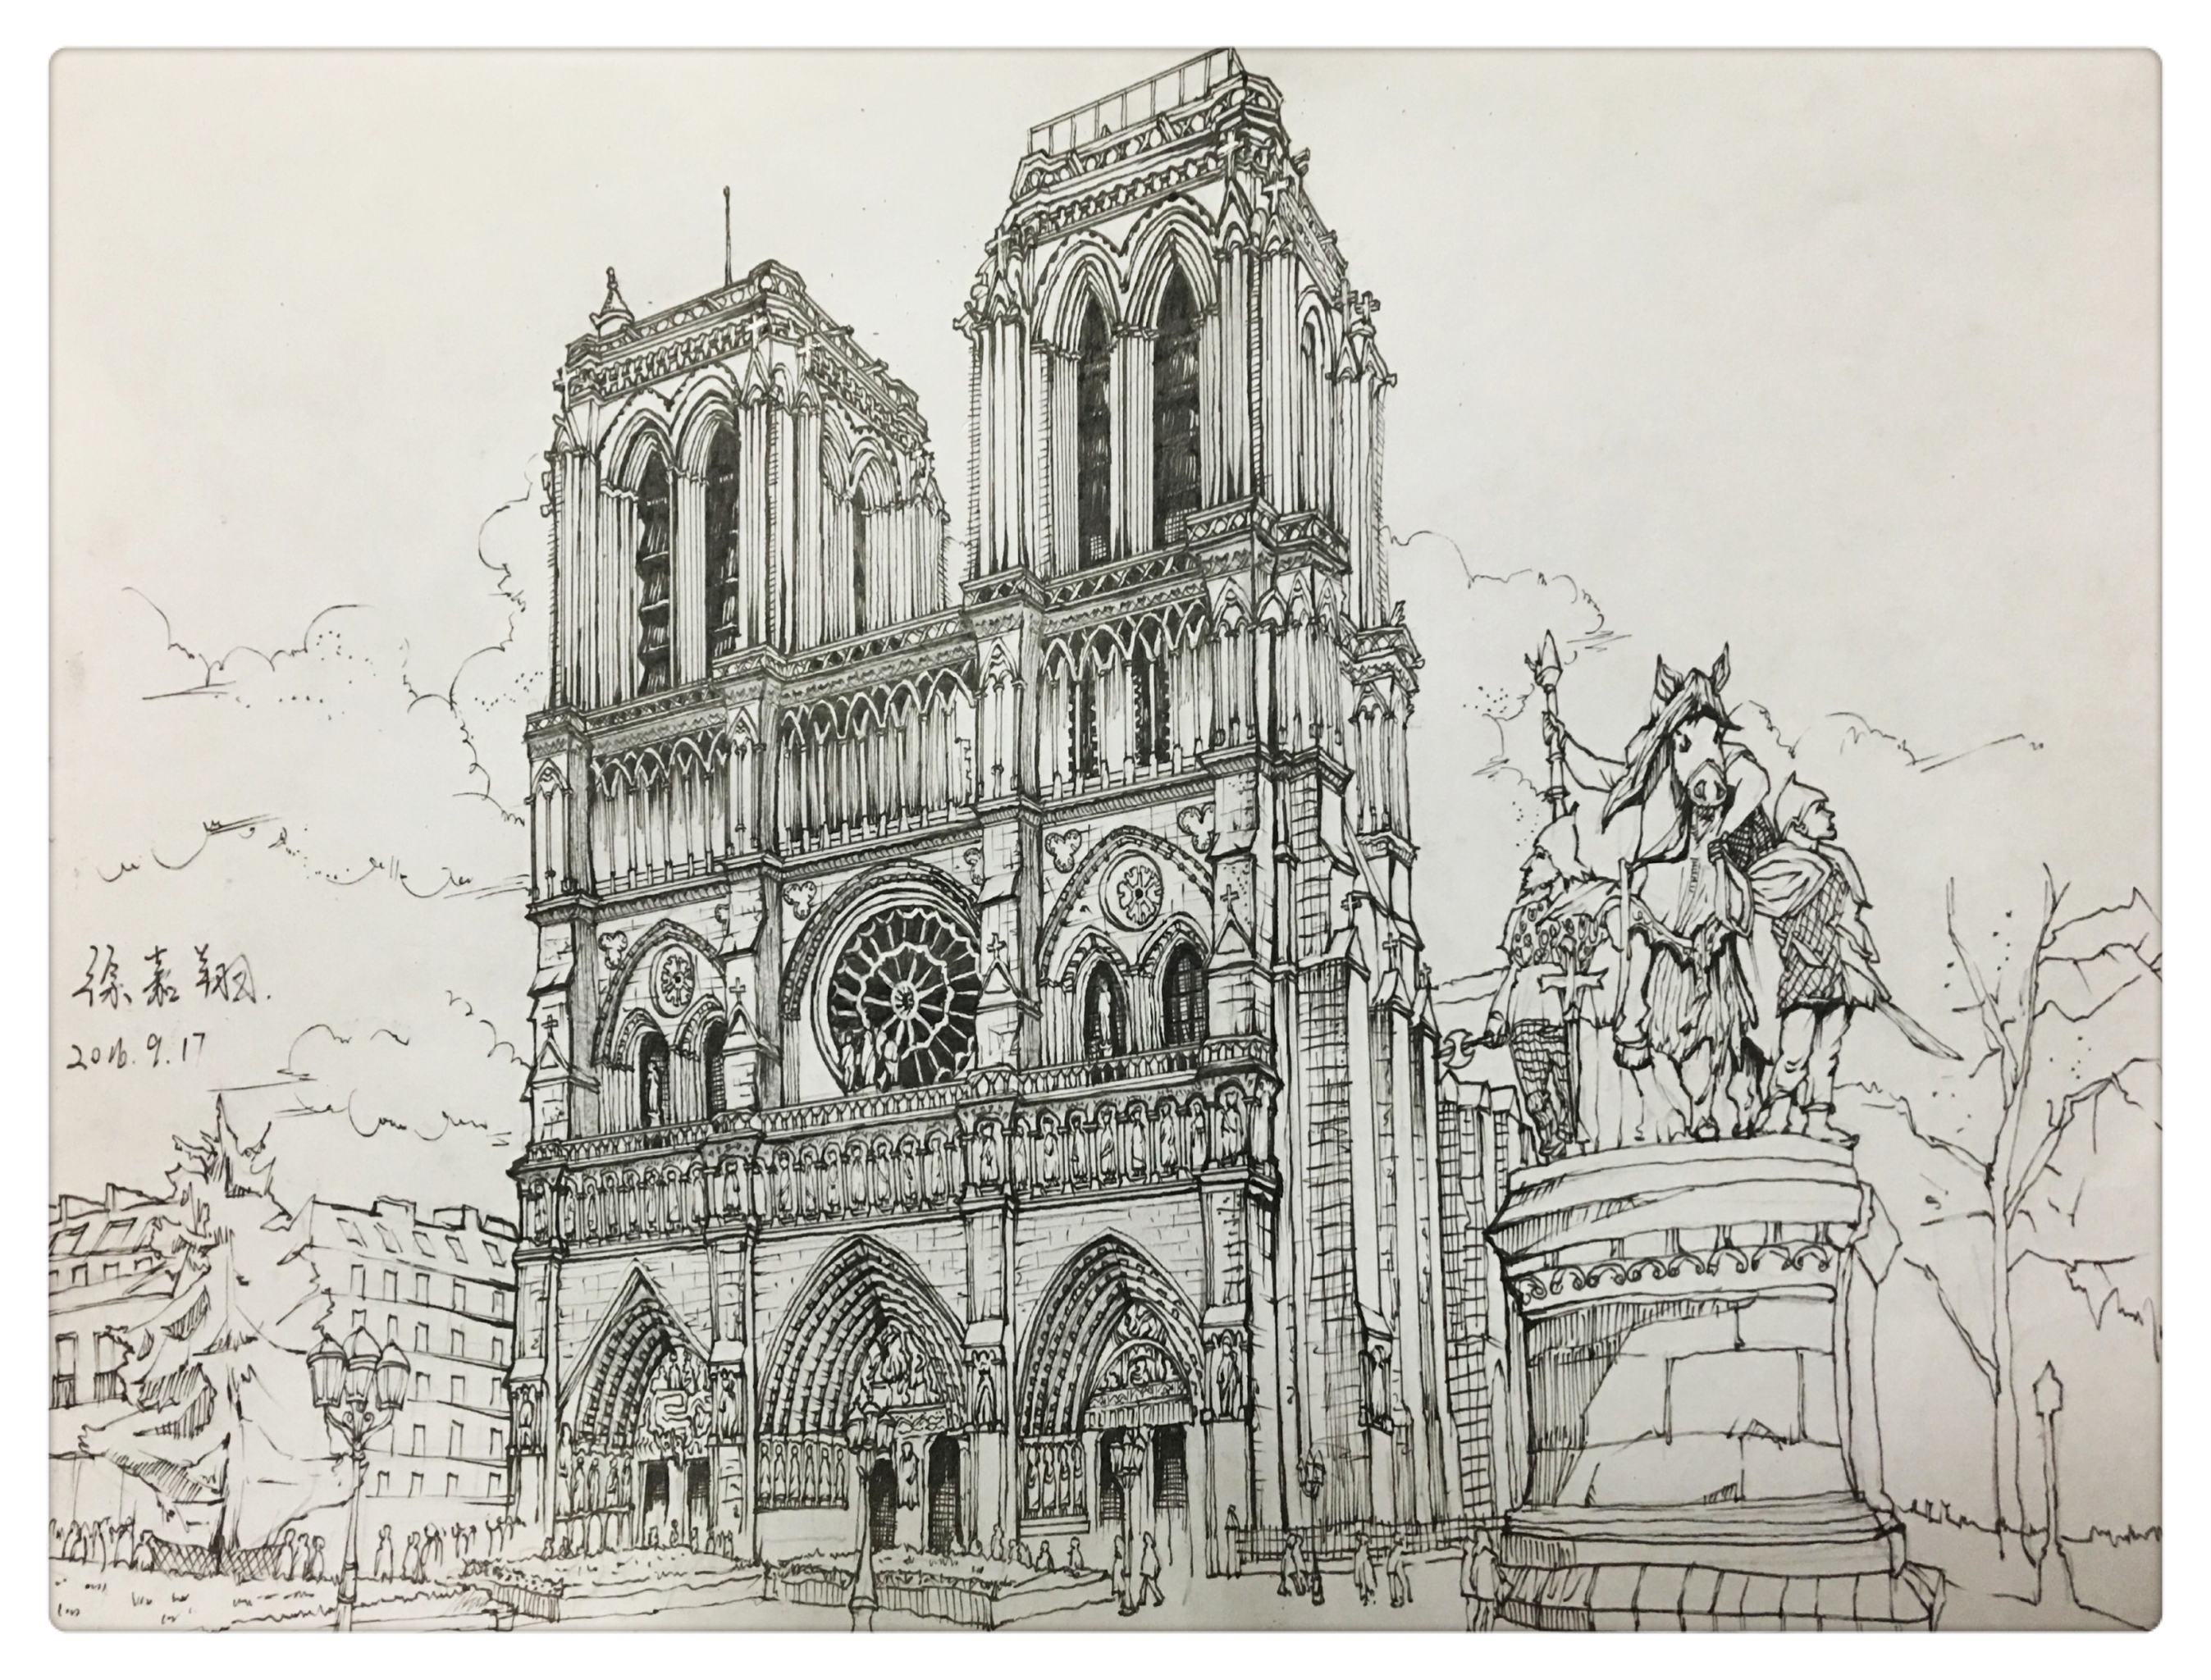 巴黎圣母院线稿高清图片